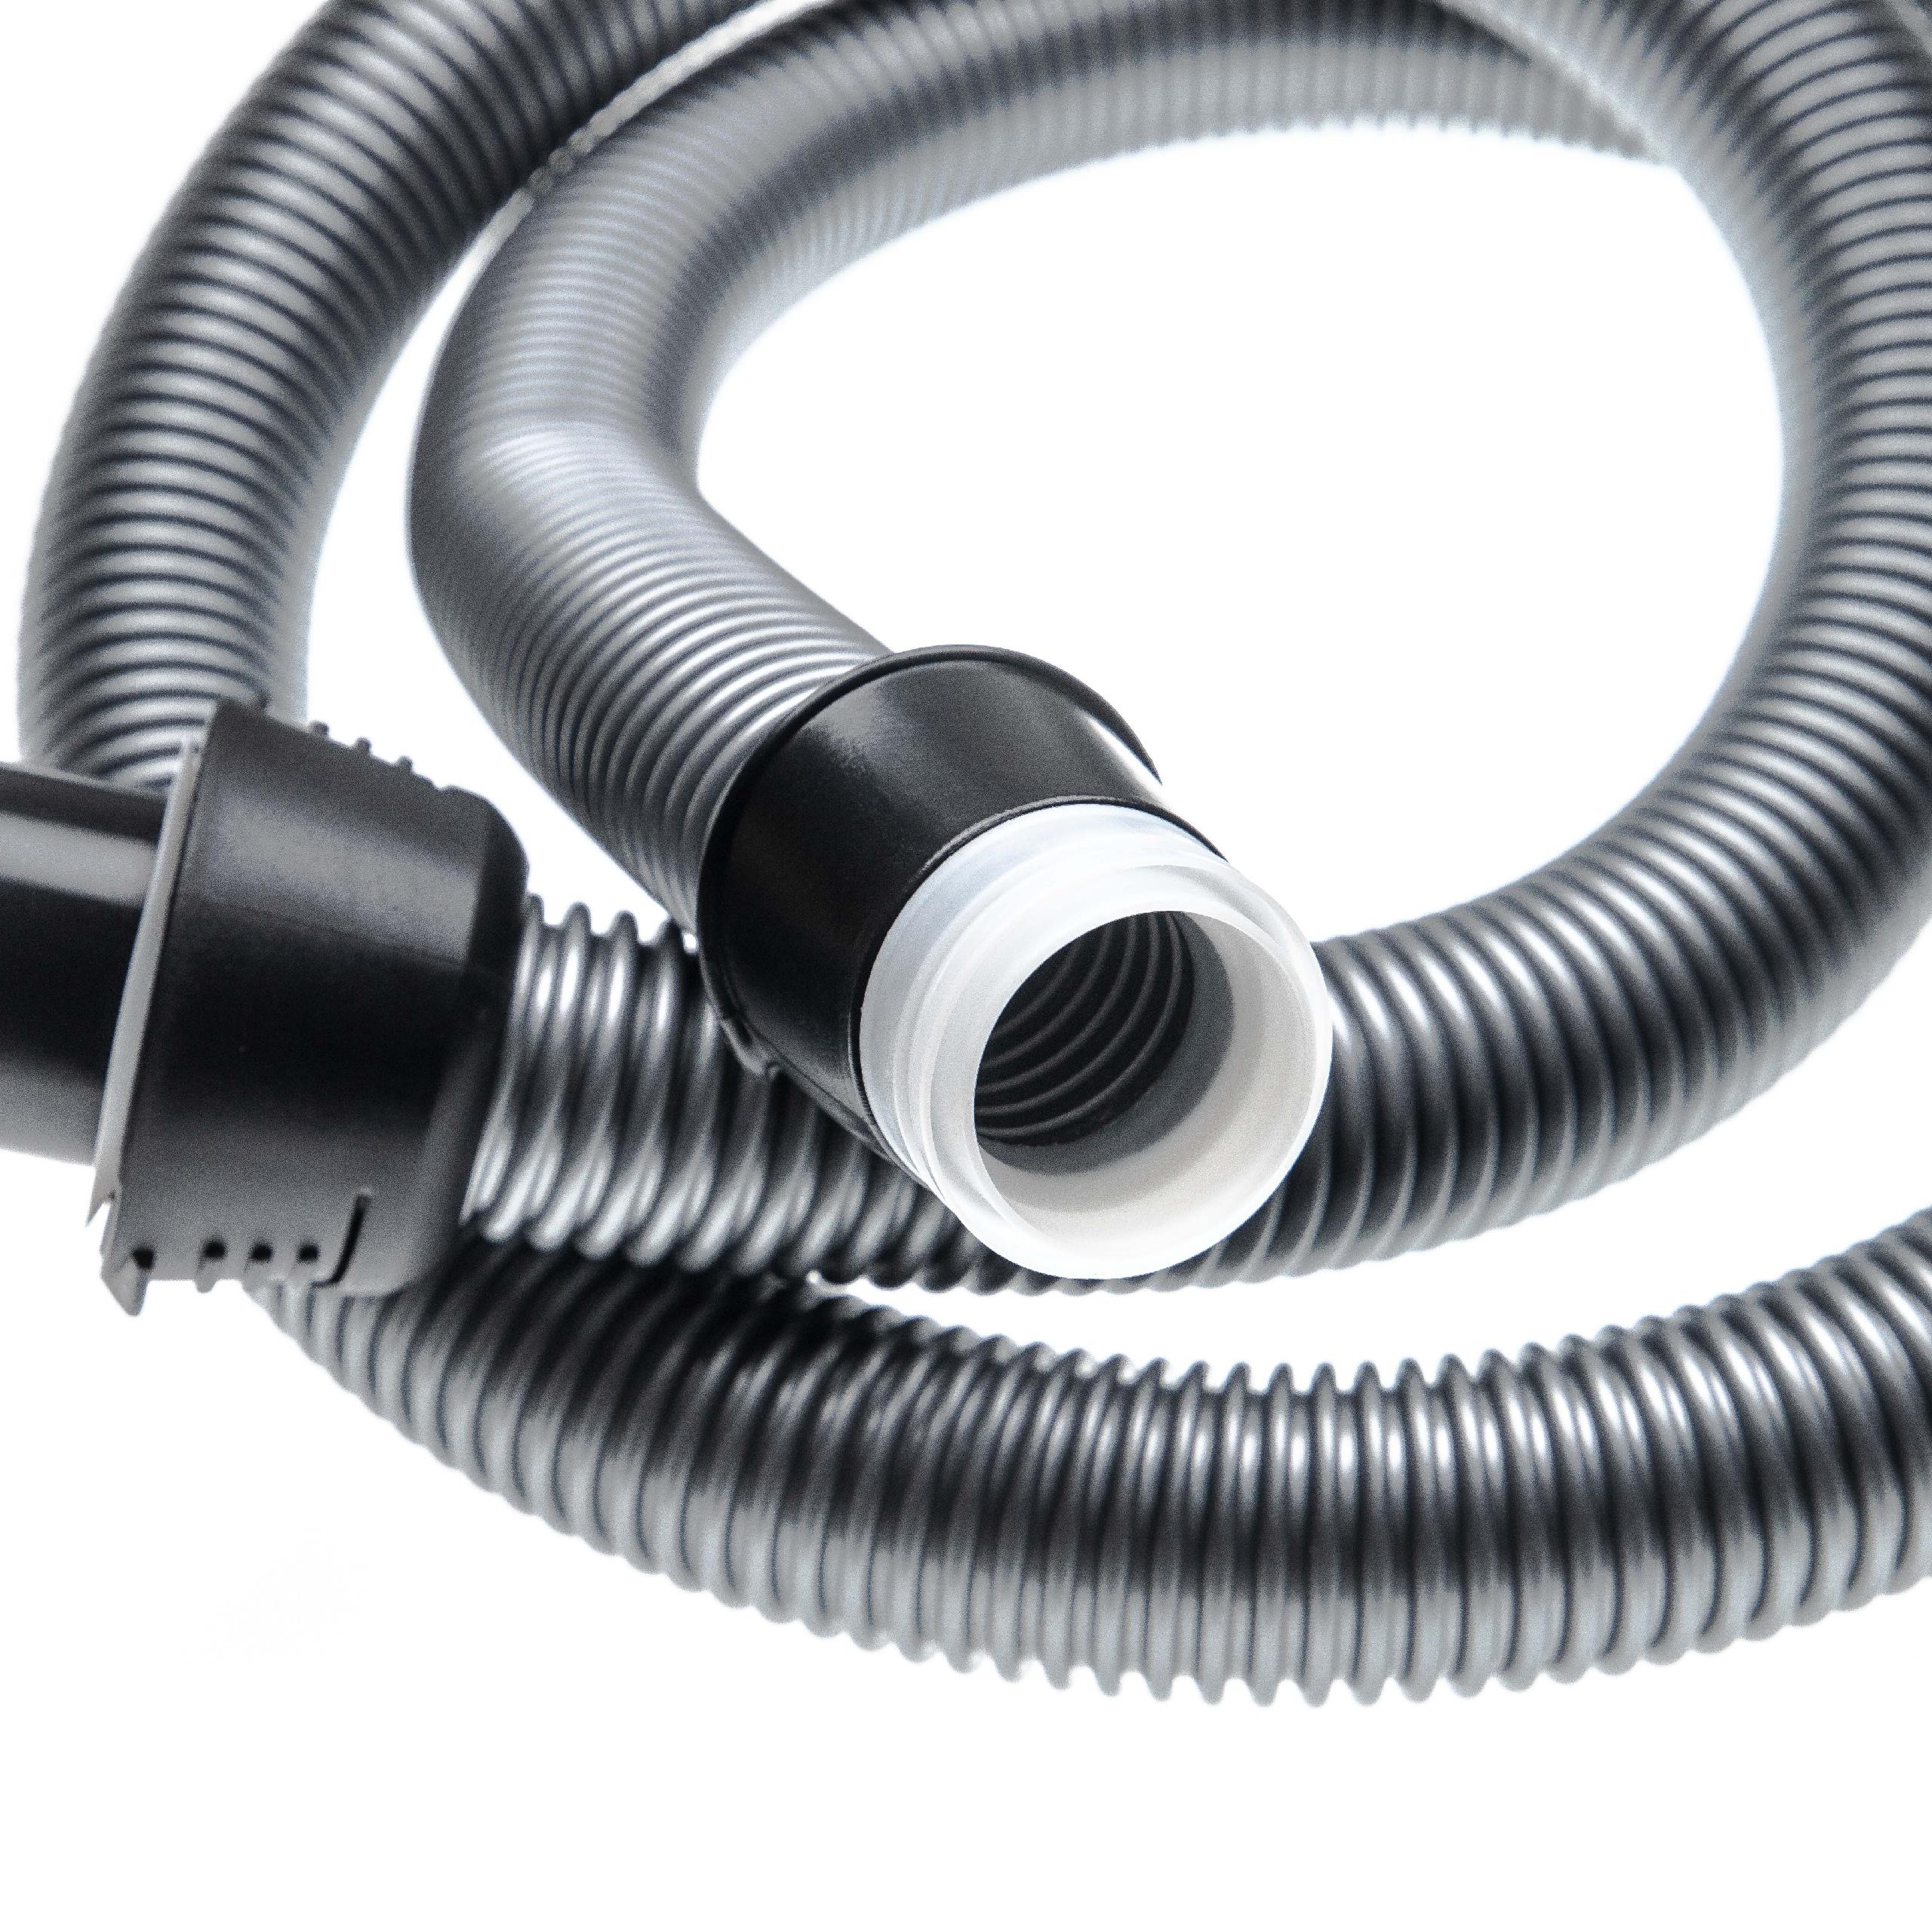 Vhbw tubo flessibile 1,8m compatibile con Electrolux 910287421, 910287426,  910287427, 910287428 aspirapolvere nero/argento